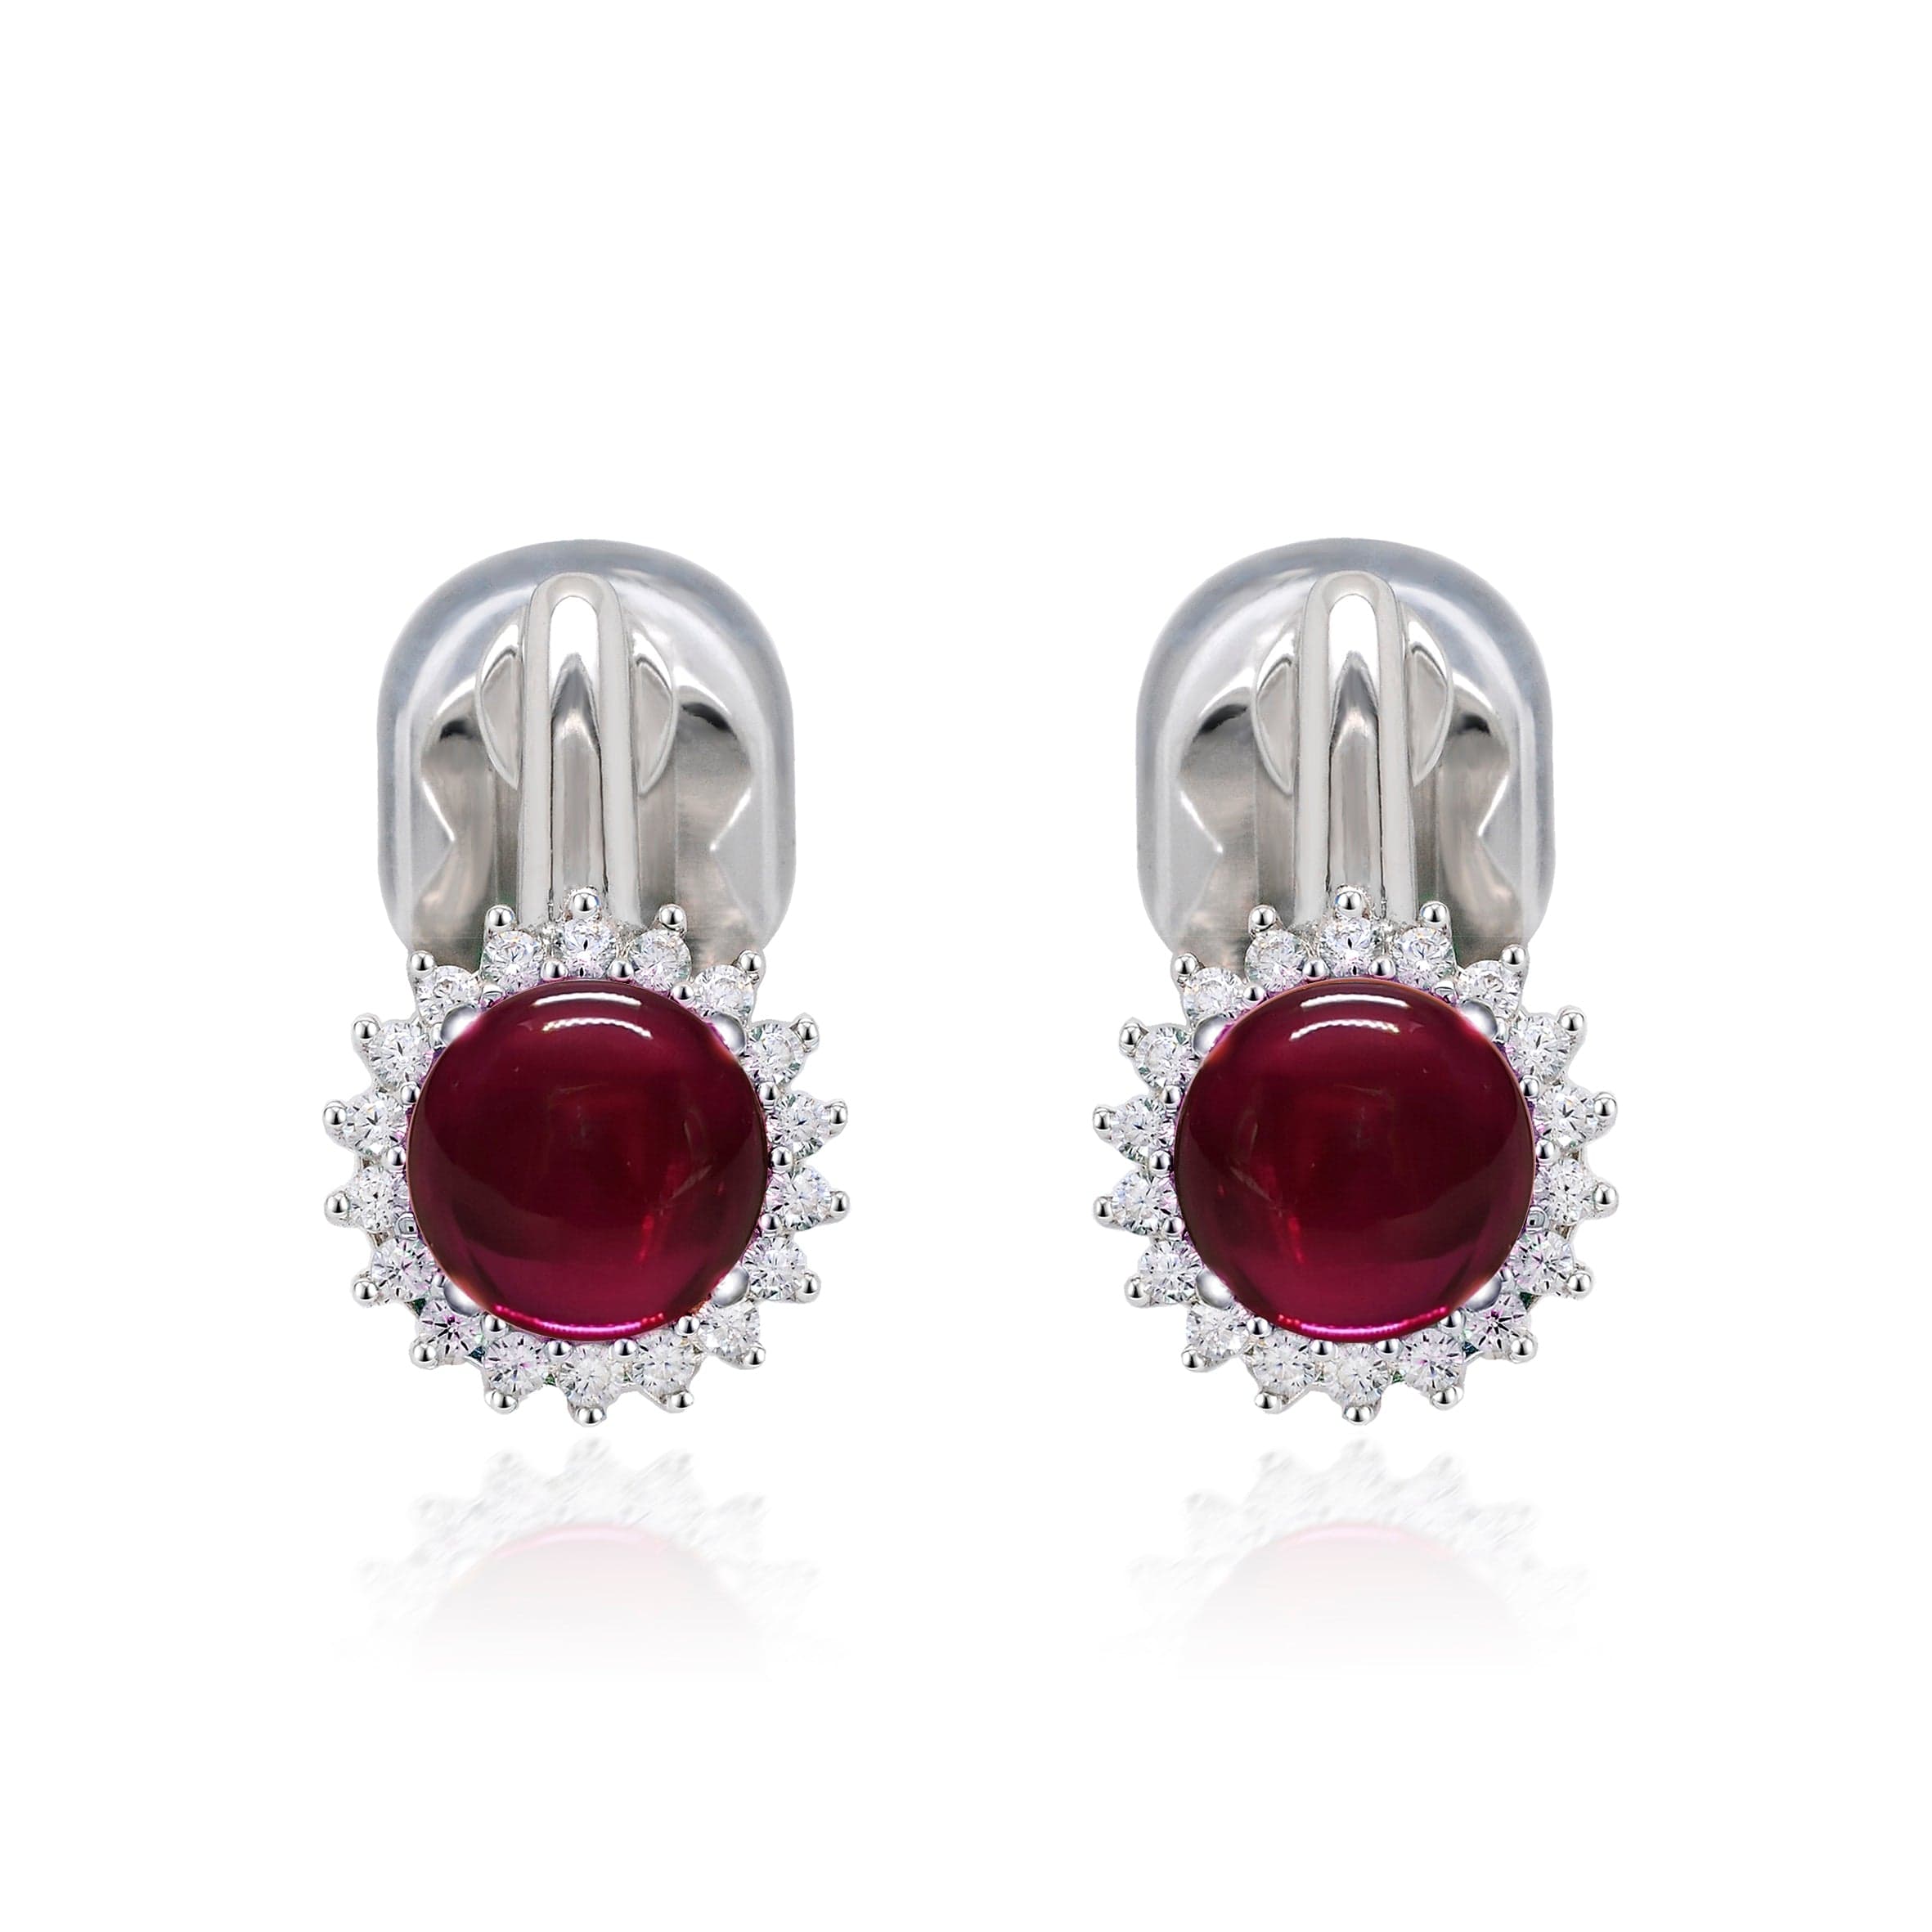 Lynora Silver Earrings Sterling Silver / Red Scarlet Glass Sphere Earrings